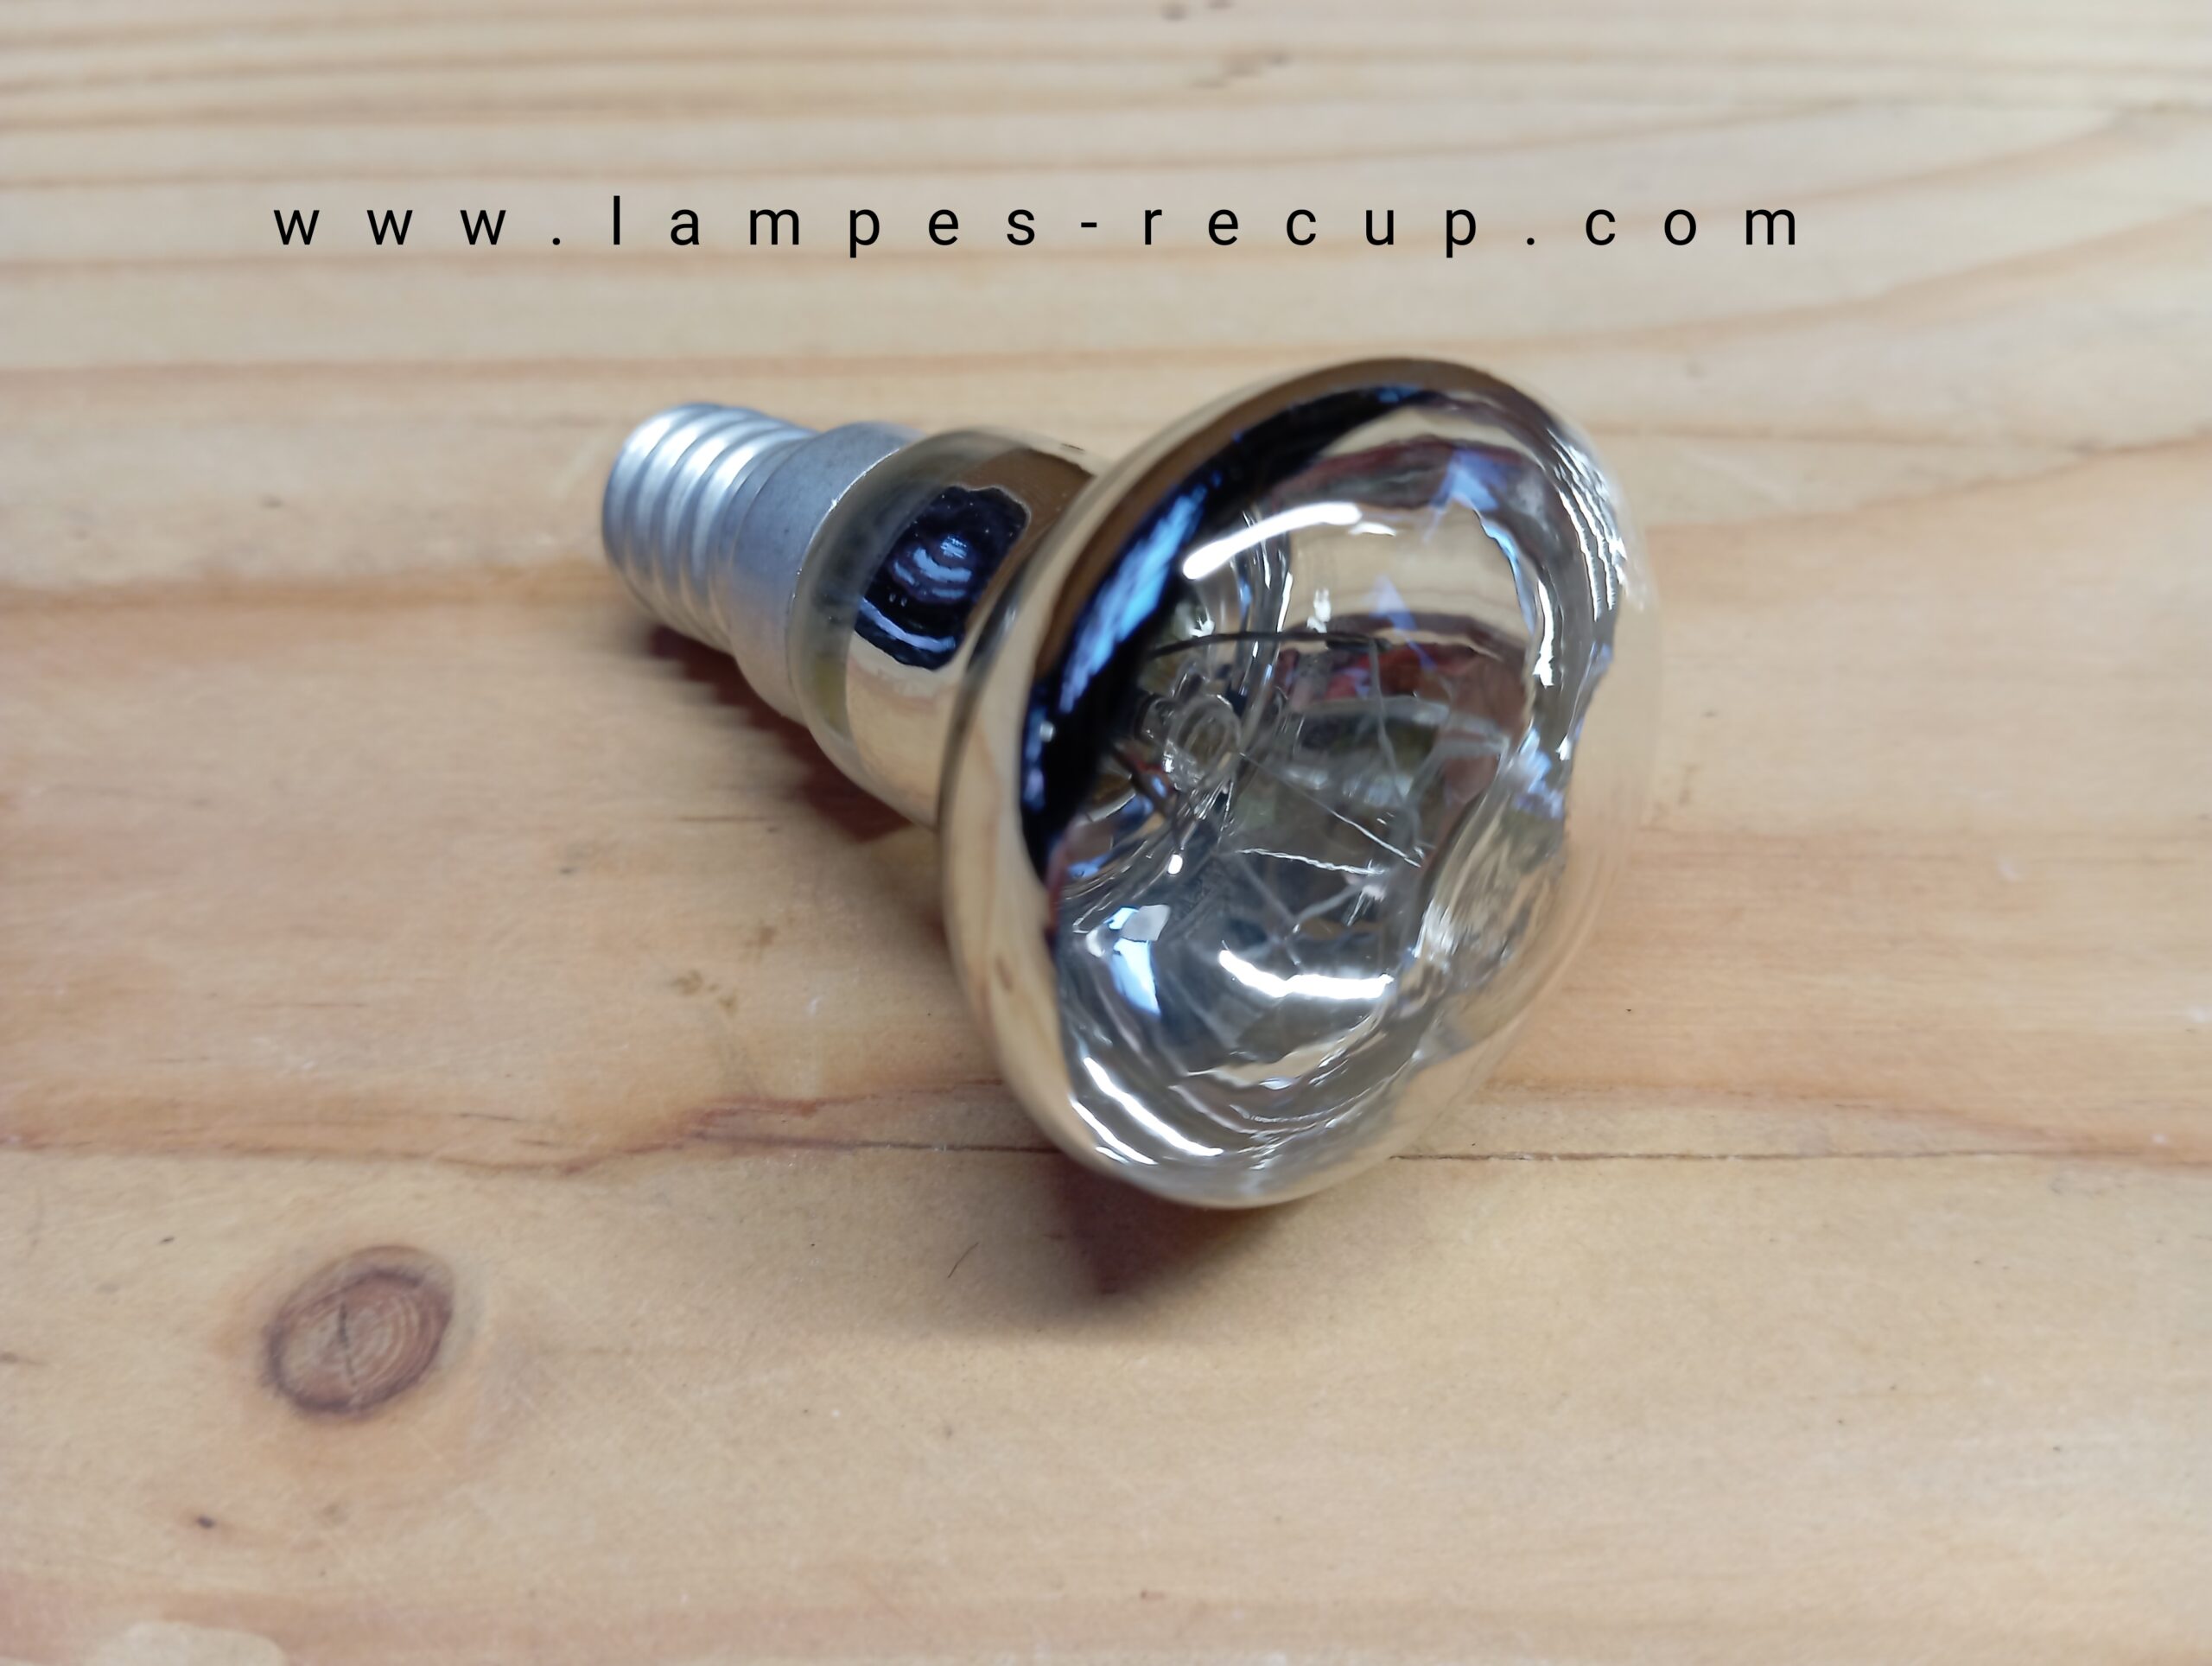 25W R39 E14 Ampoule Lampe à Lave, Ampoule Pour Lampe à Lave R39 Réflecteur  260lm, lot